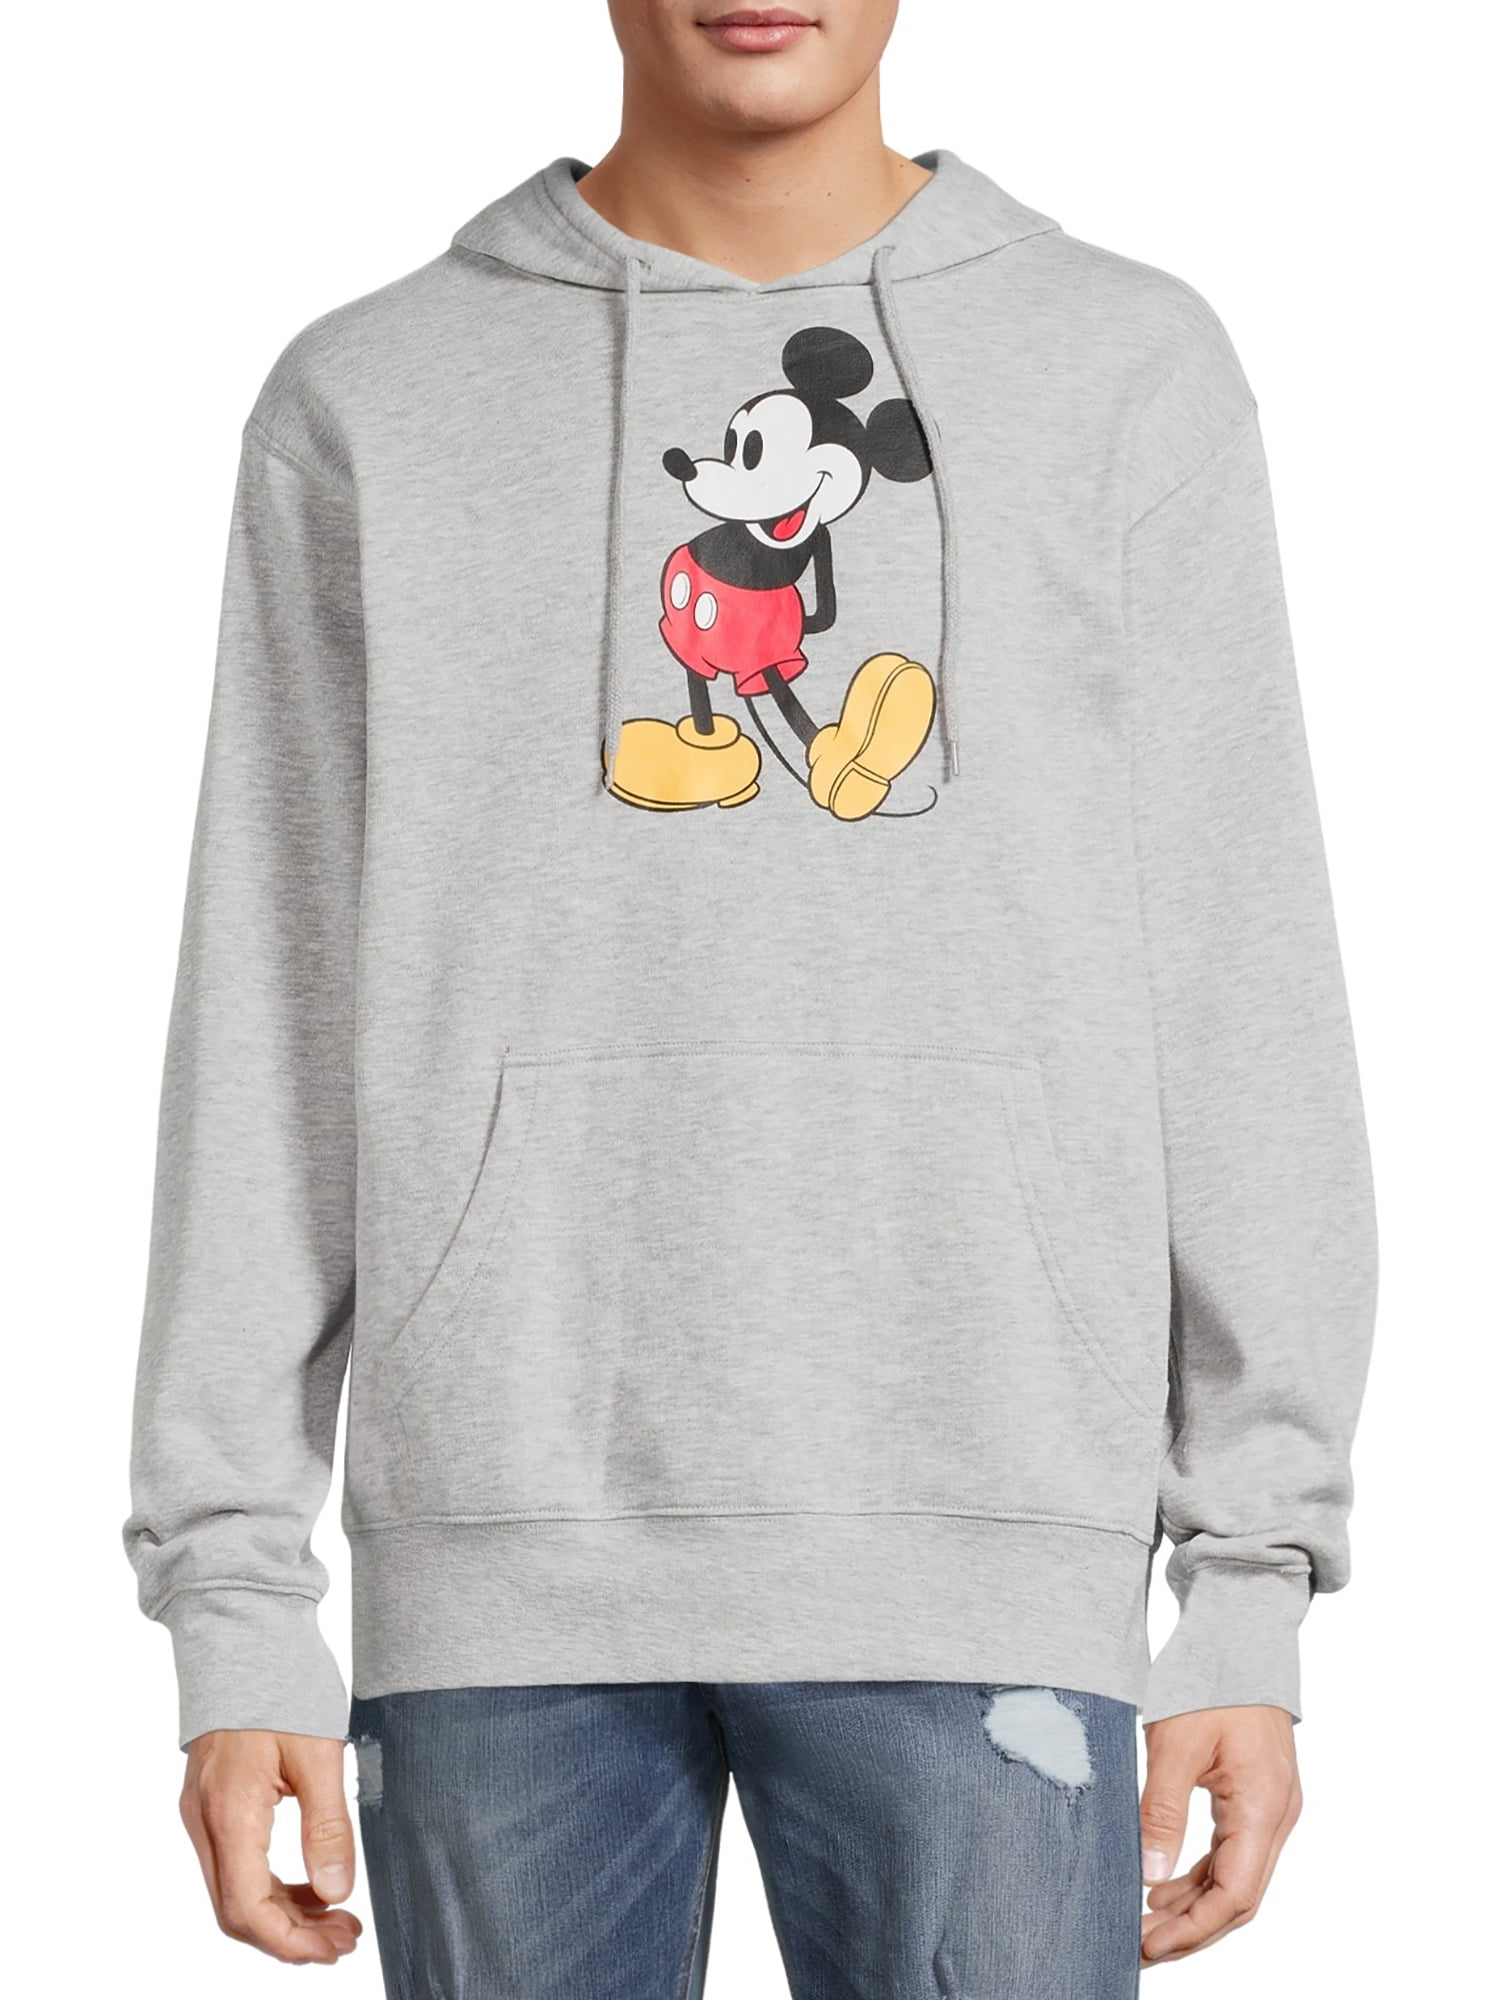 Disney Spell Out Sweatshirt 90s Disney Womens XL Mickey Mouse Spell Out Fleece Hoodie Sweatshirt Red Womens Mickey Mouse Fleece Sweatshirt